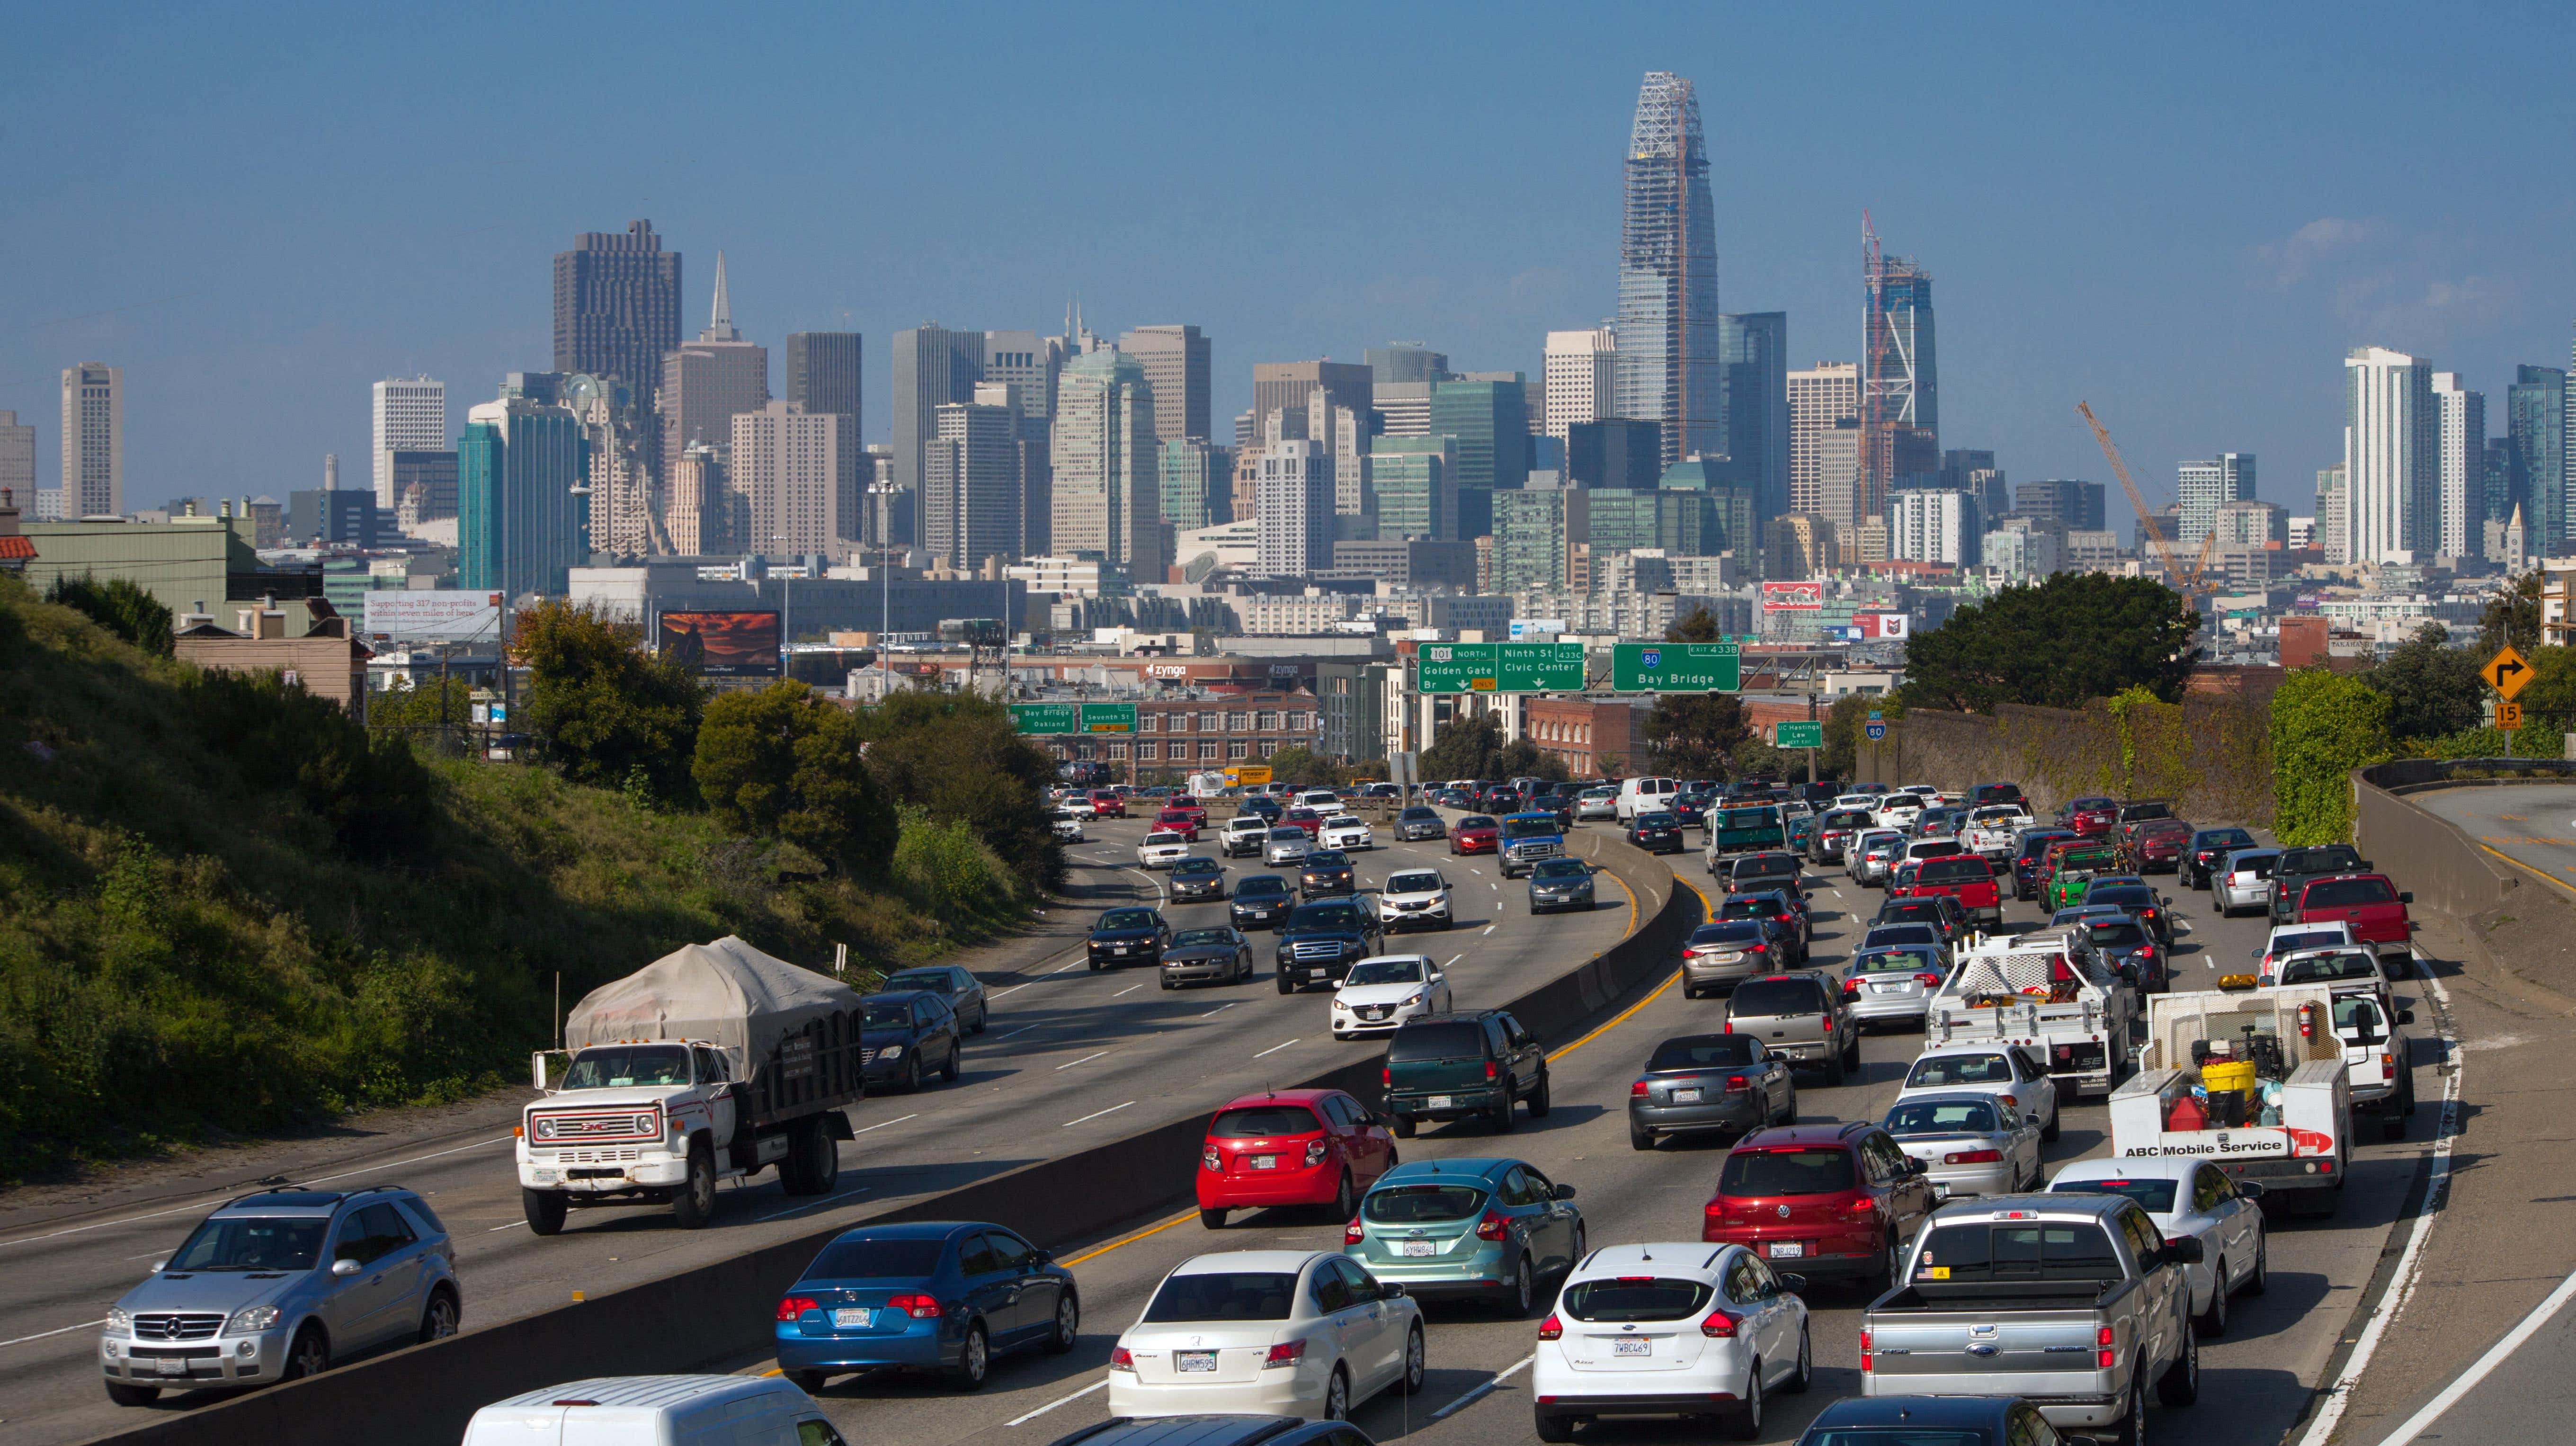 Skyline von San Francisco, Kalifornien mit Verkehr